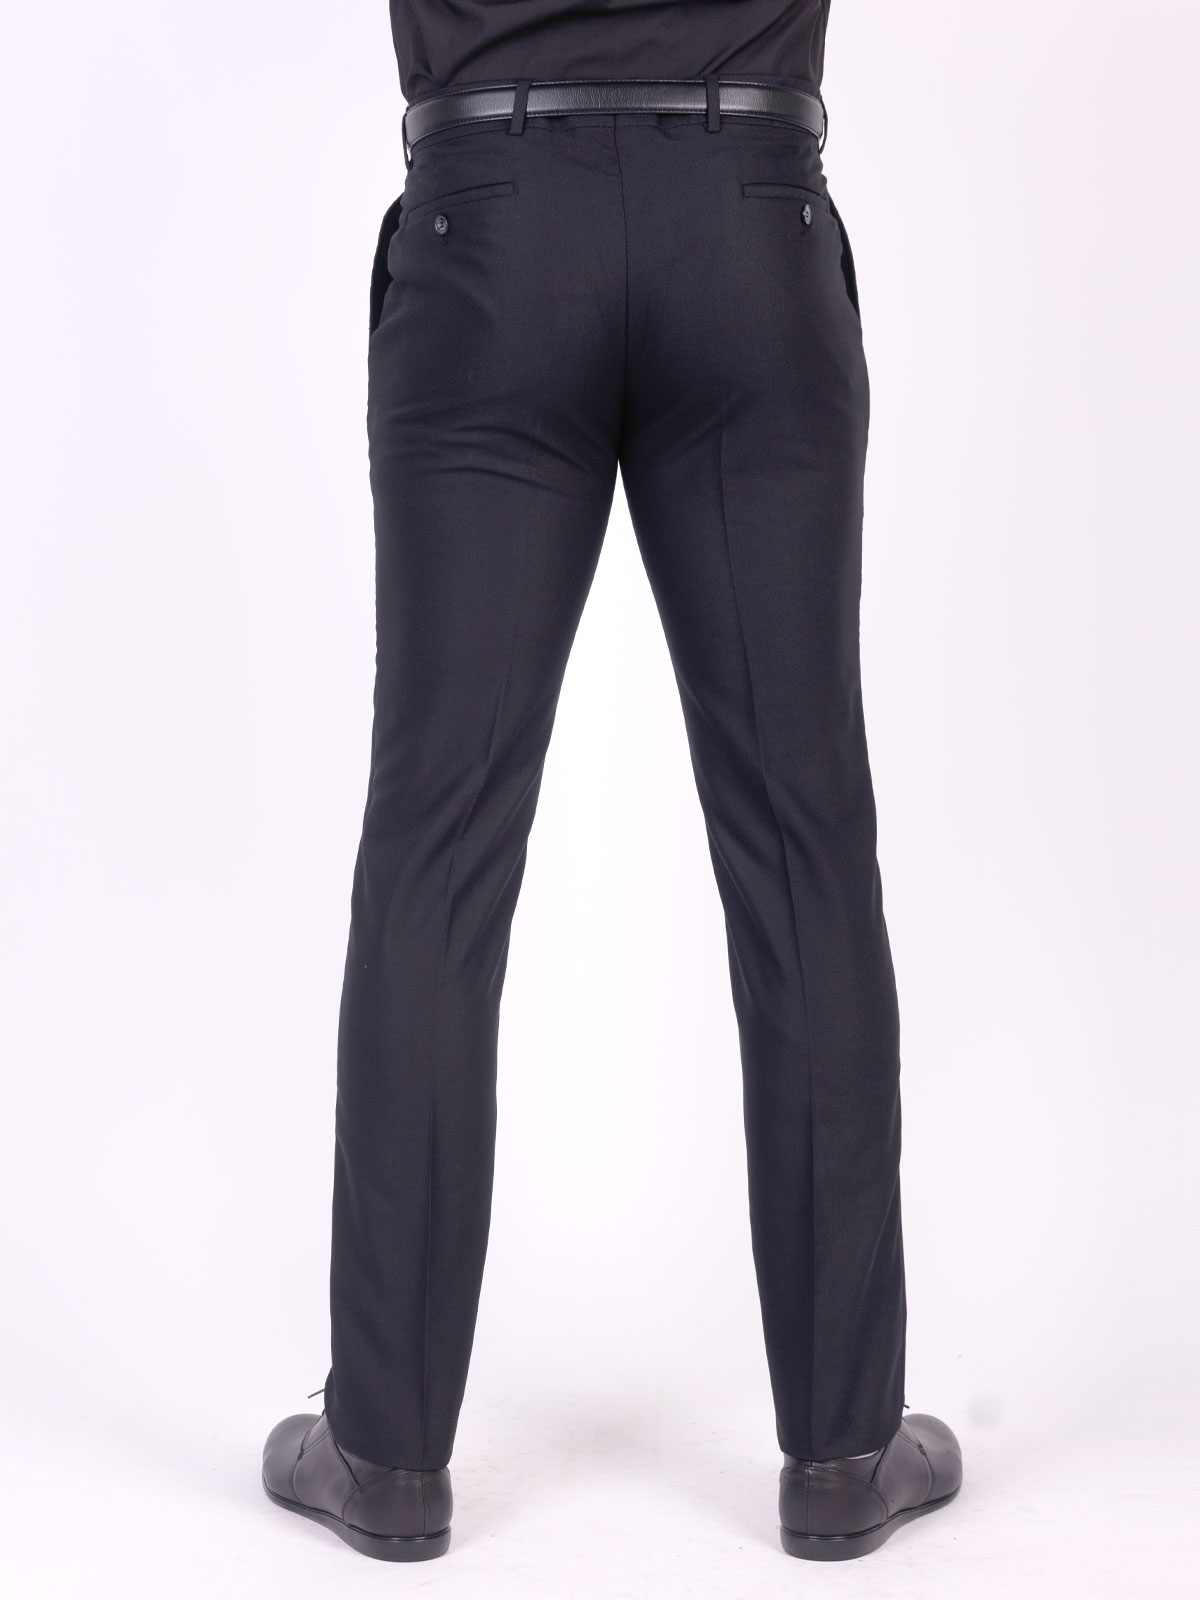 Pantaloni clasici pentru bărbați în negr - 63664 € 62.99 img2